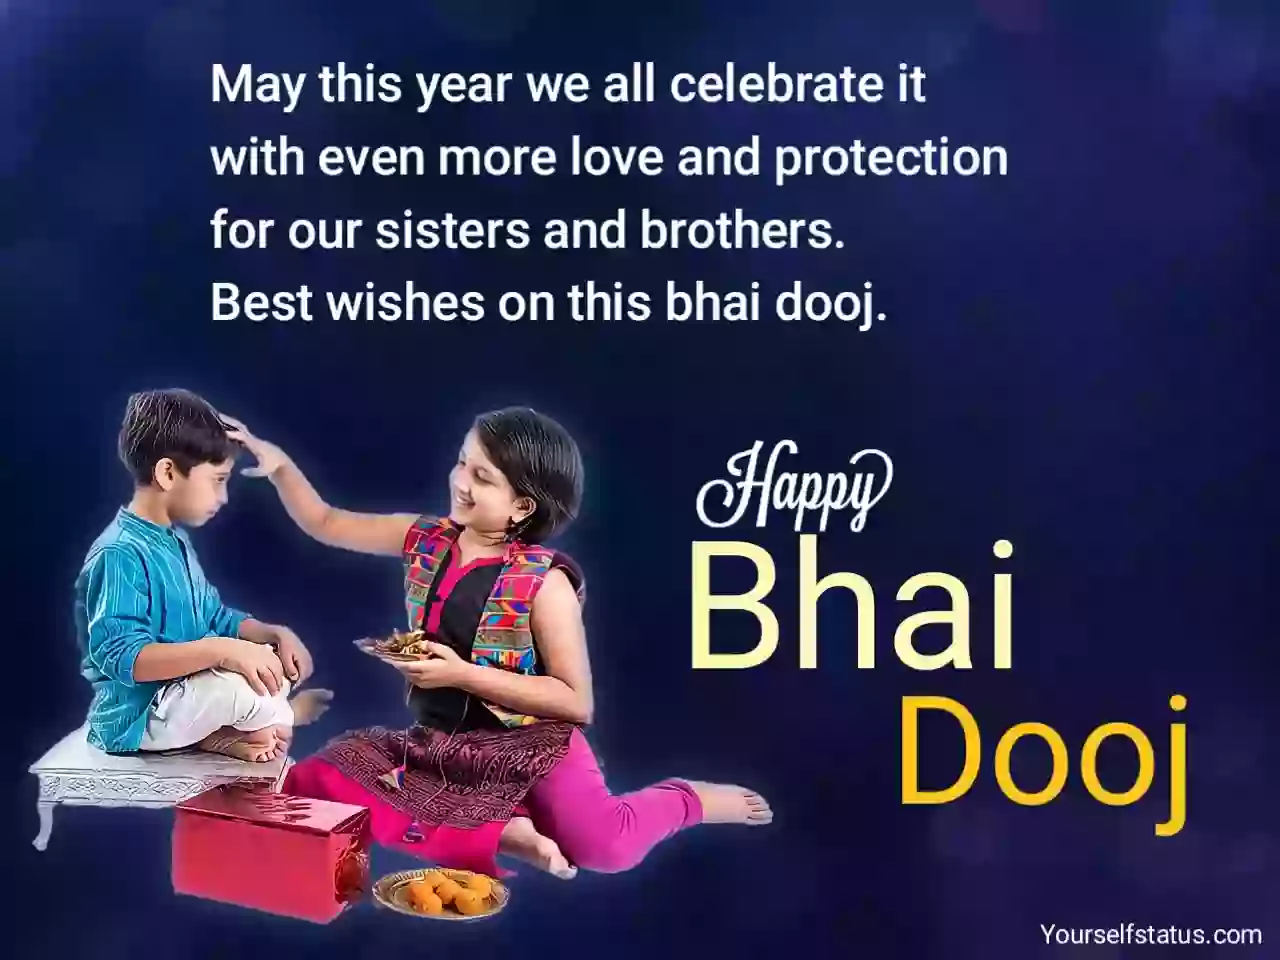 Happy Bhai Dooj wishes